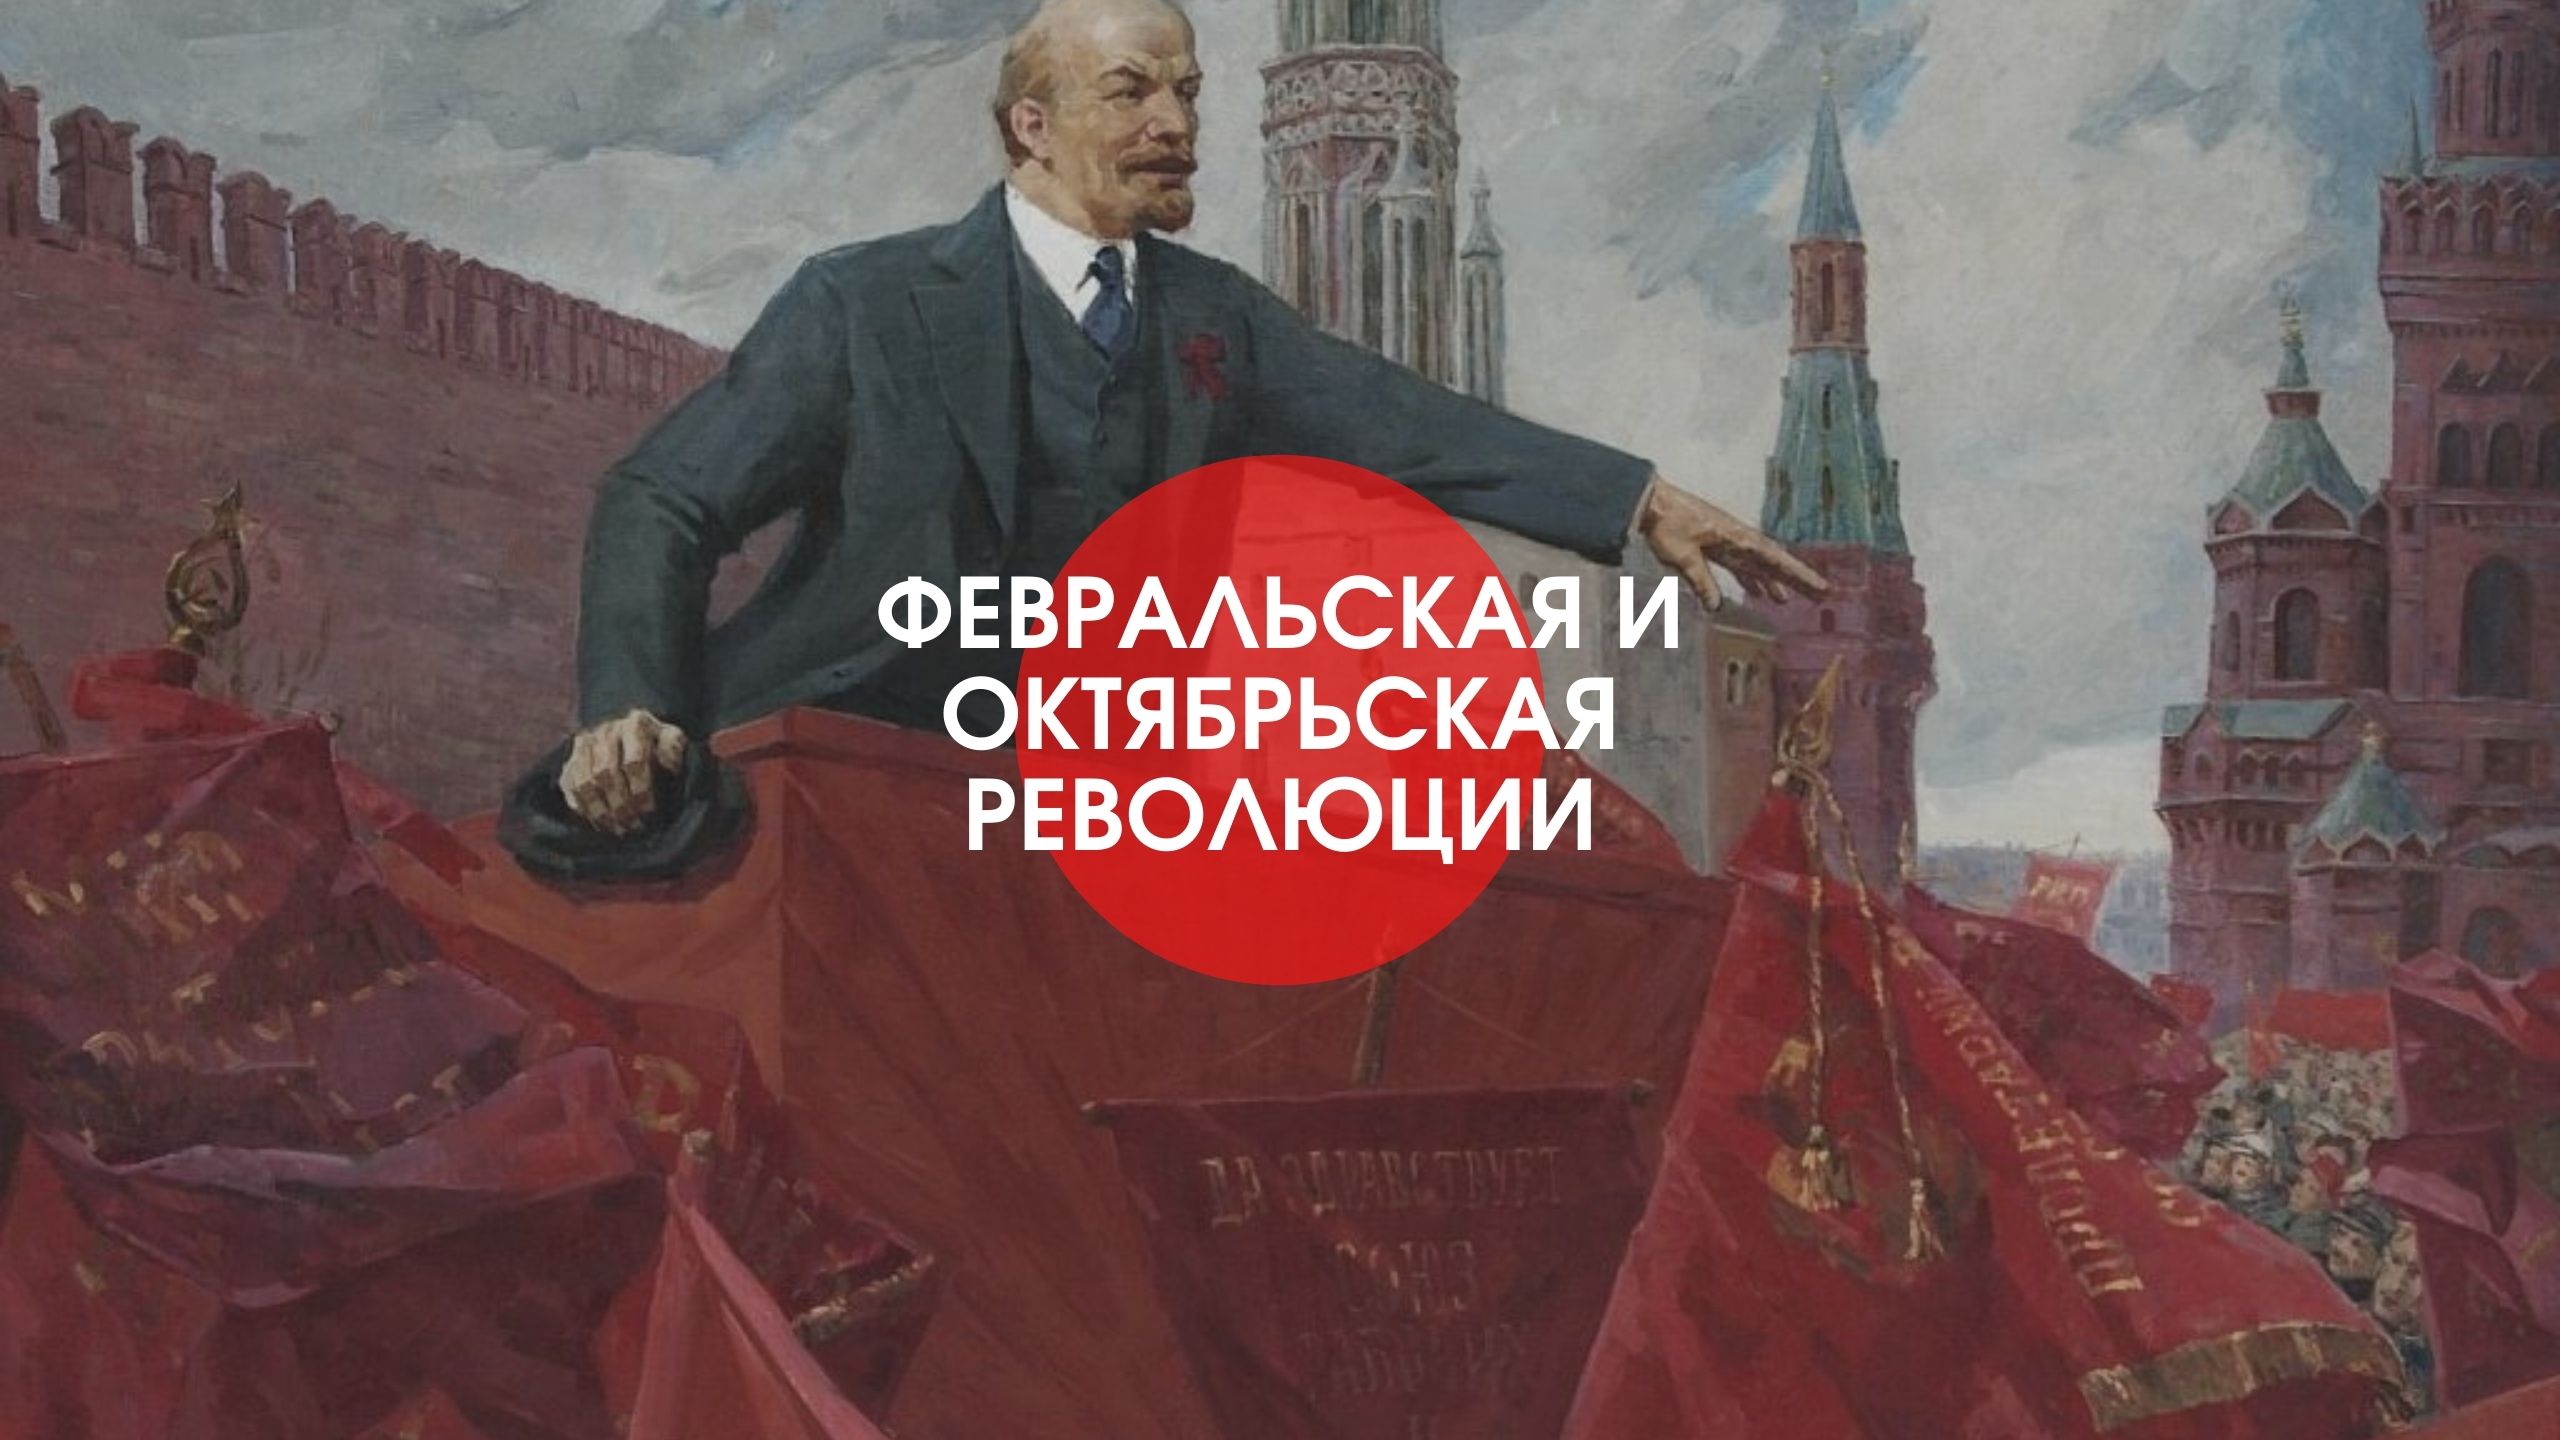 Социалистическое сотрудничество. «В. И. Ленин на фоне Кремля» (1924).